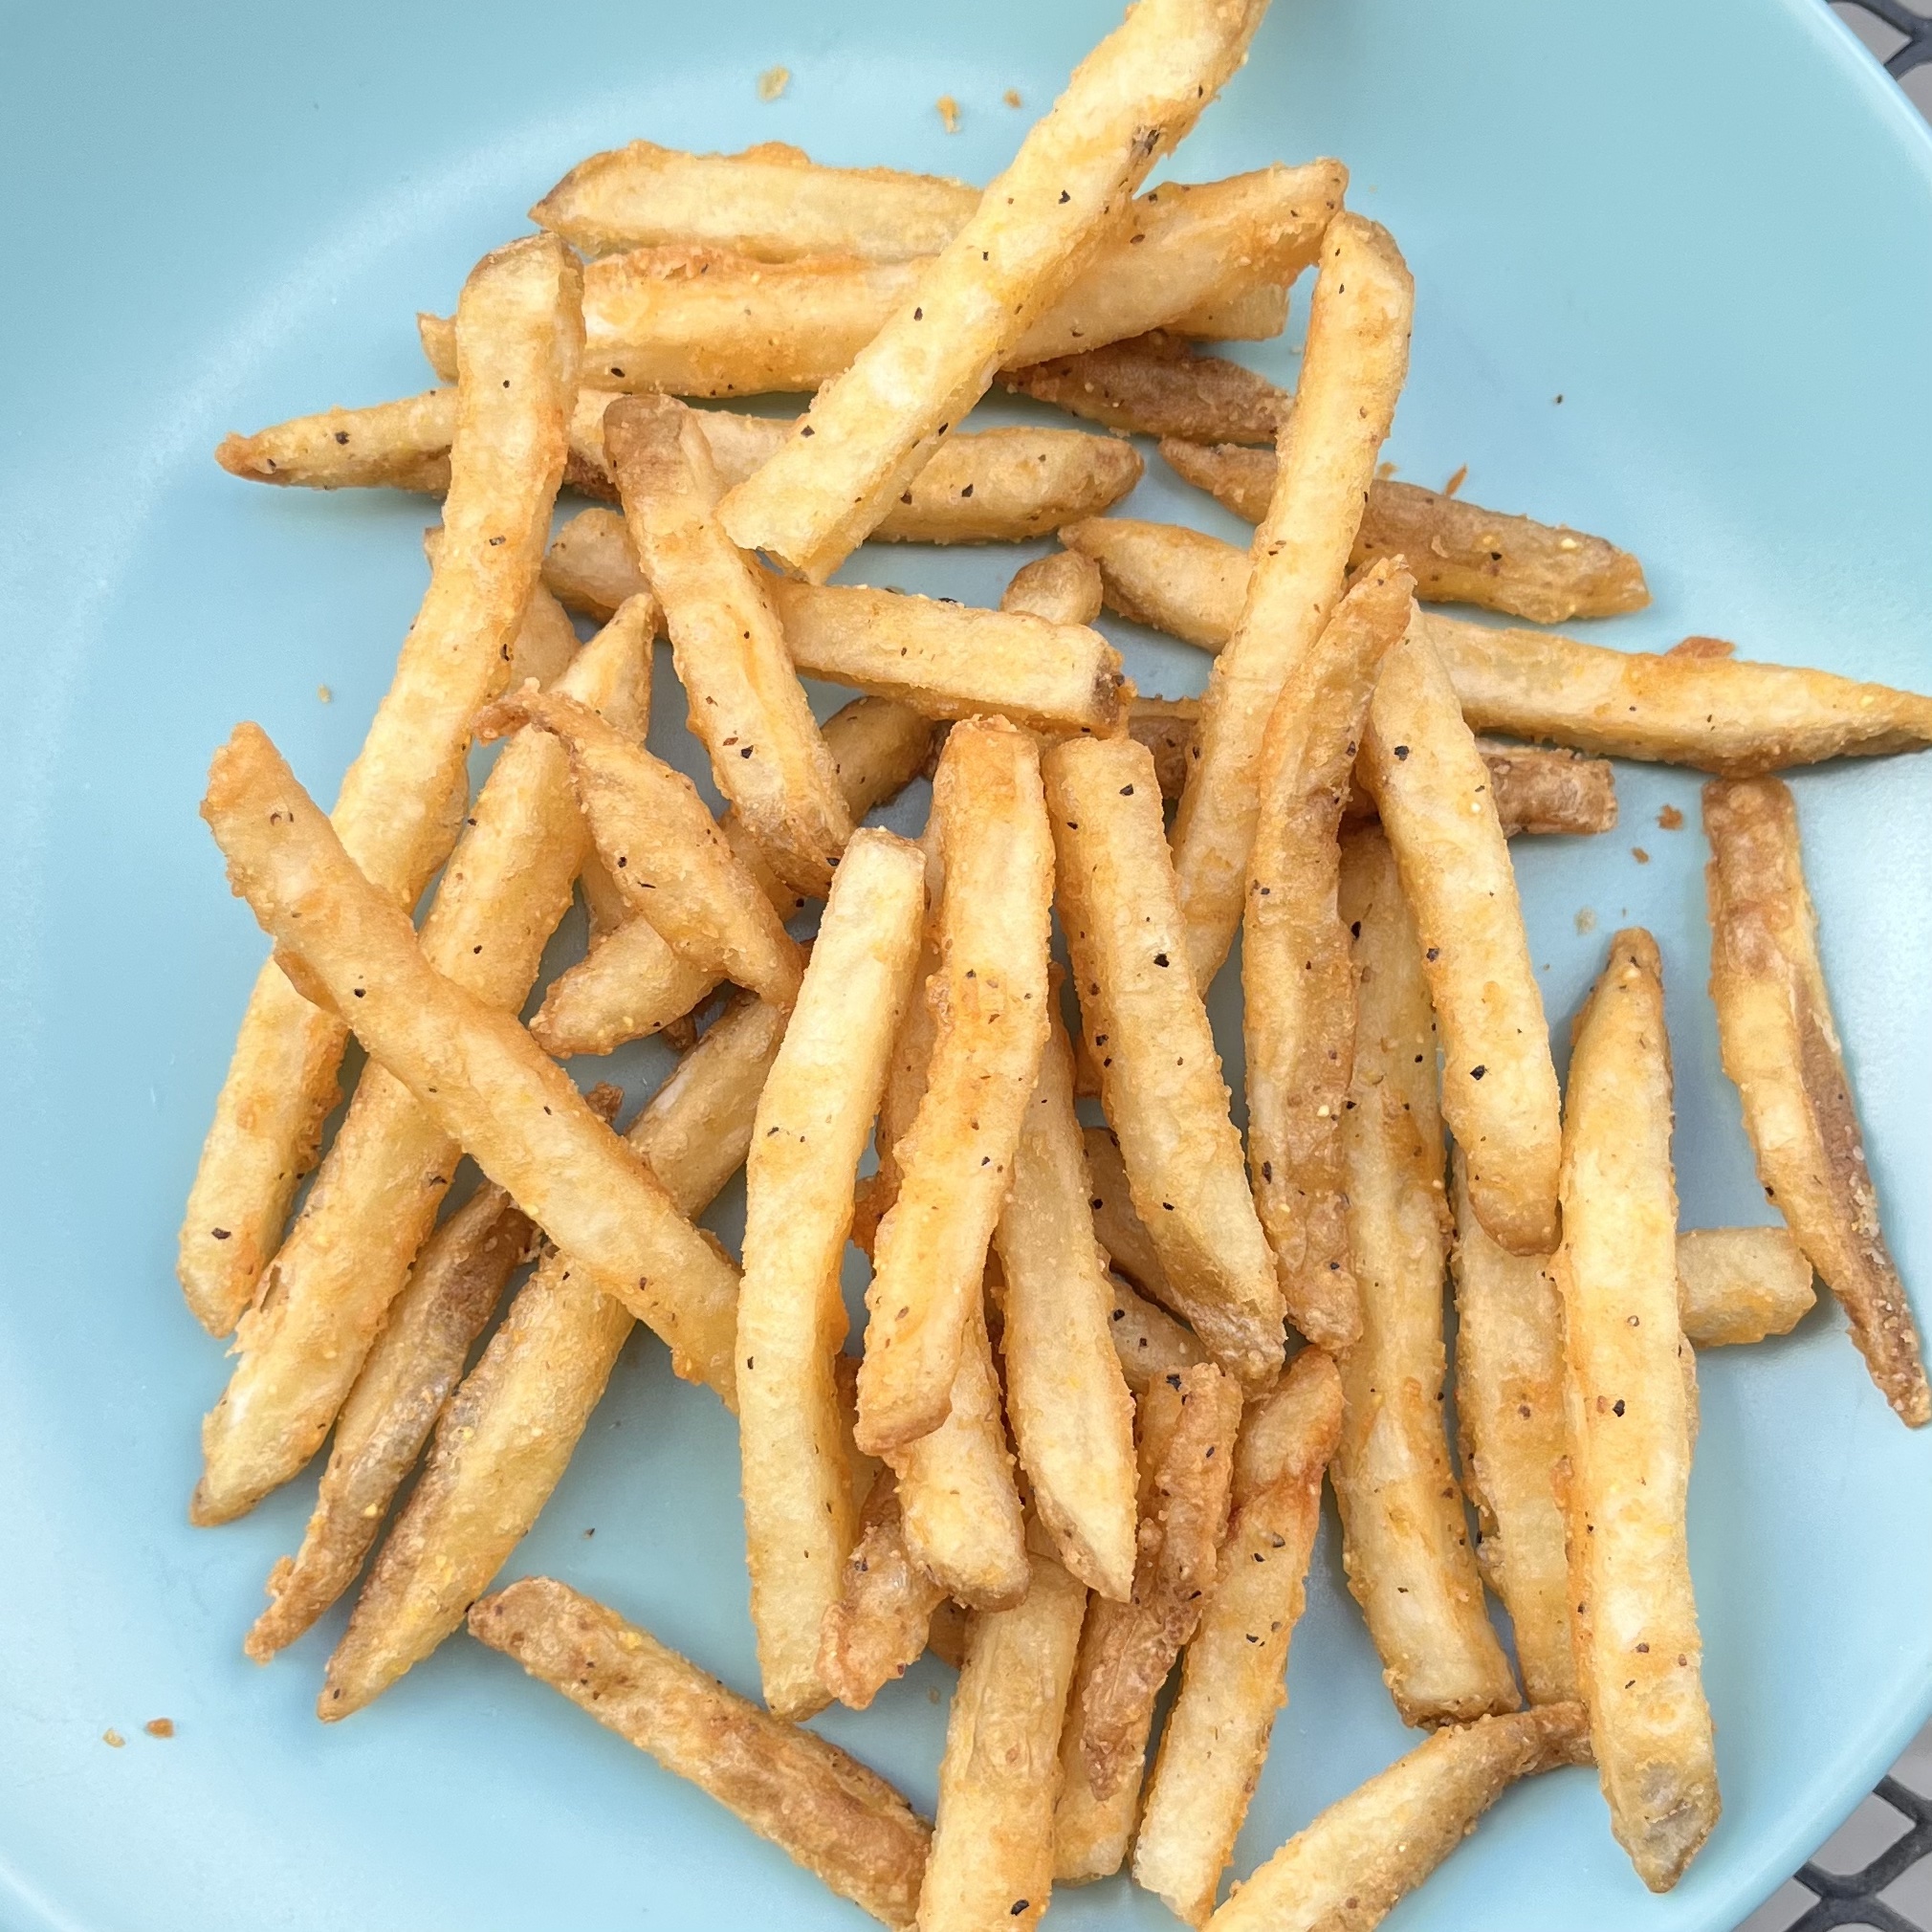 Seasoned Fries Ranked